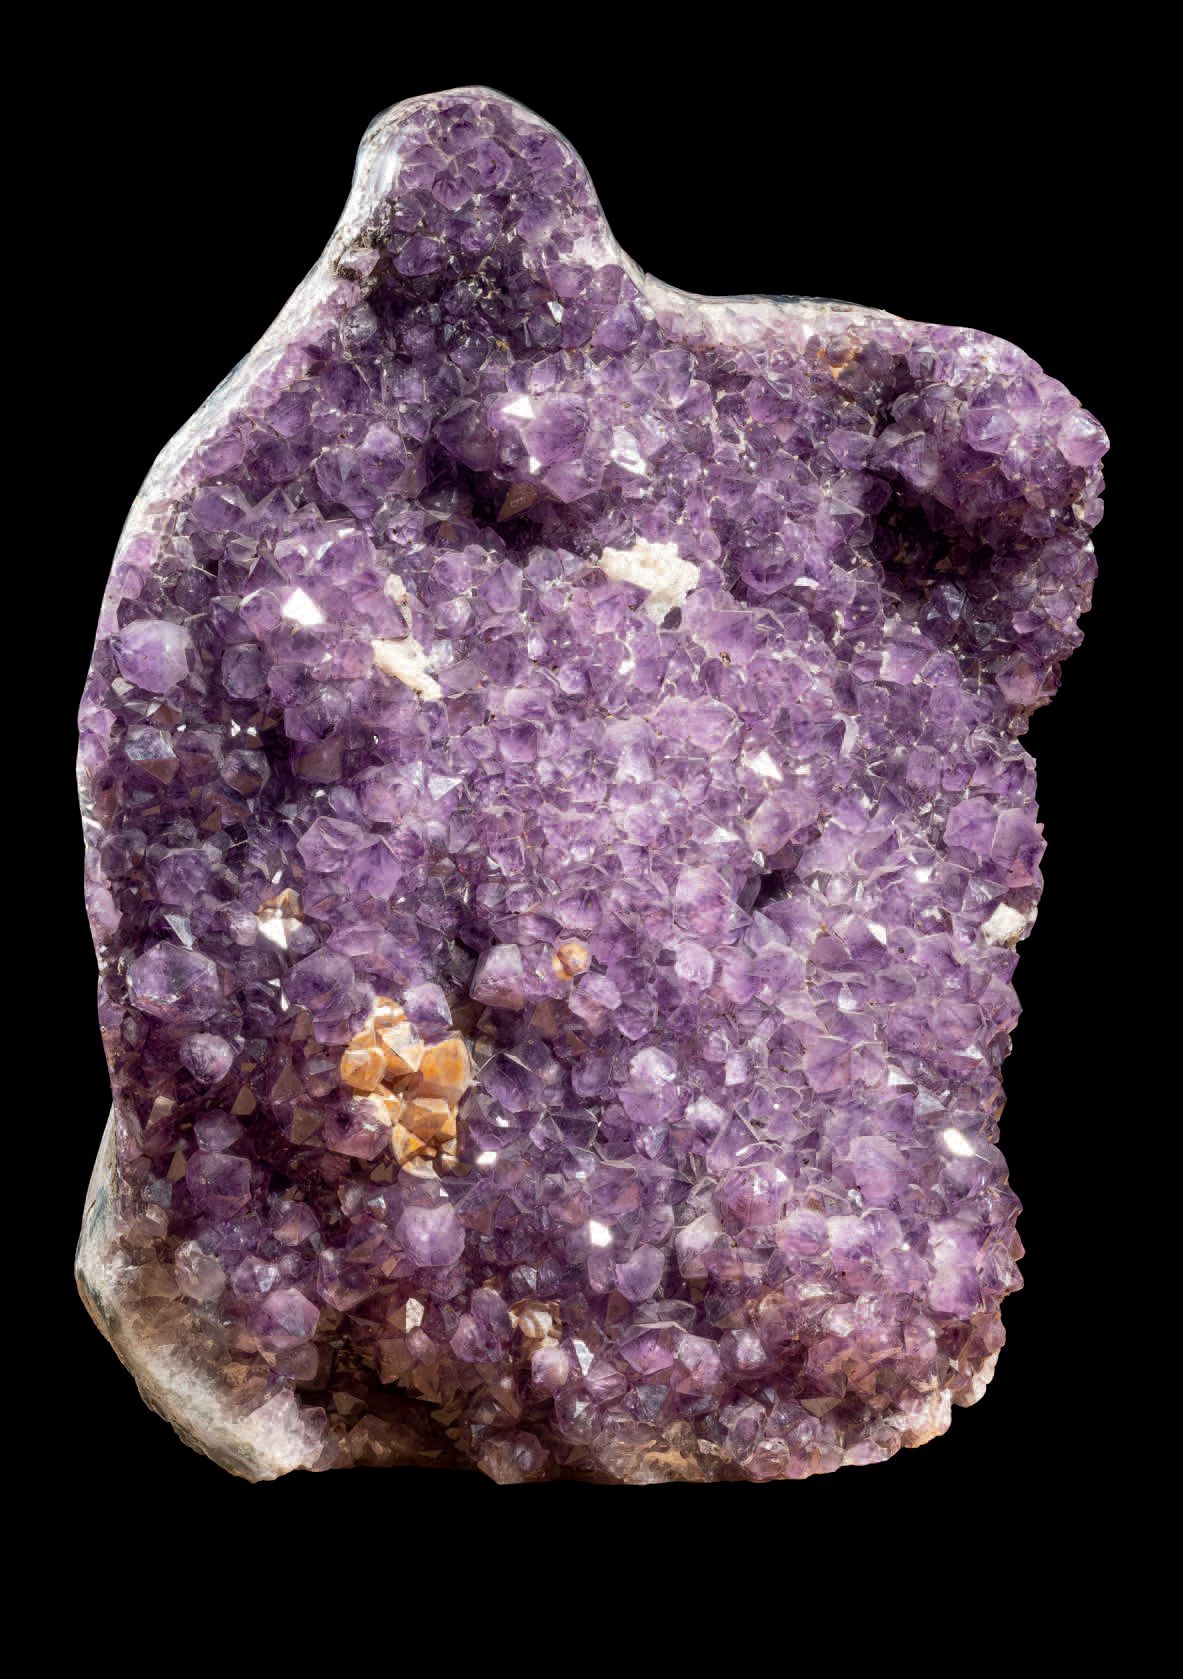 Null 紫晶石块配白色钙钛矿水晶
高47厘米 - 宽37厘米 - 重量：35公斤